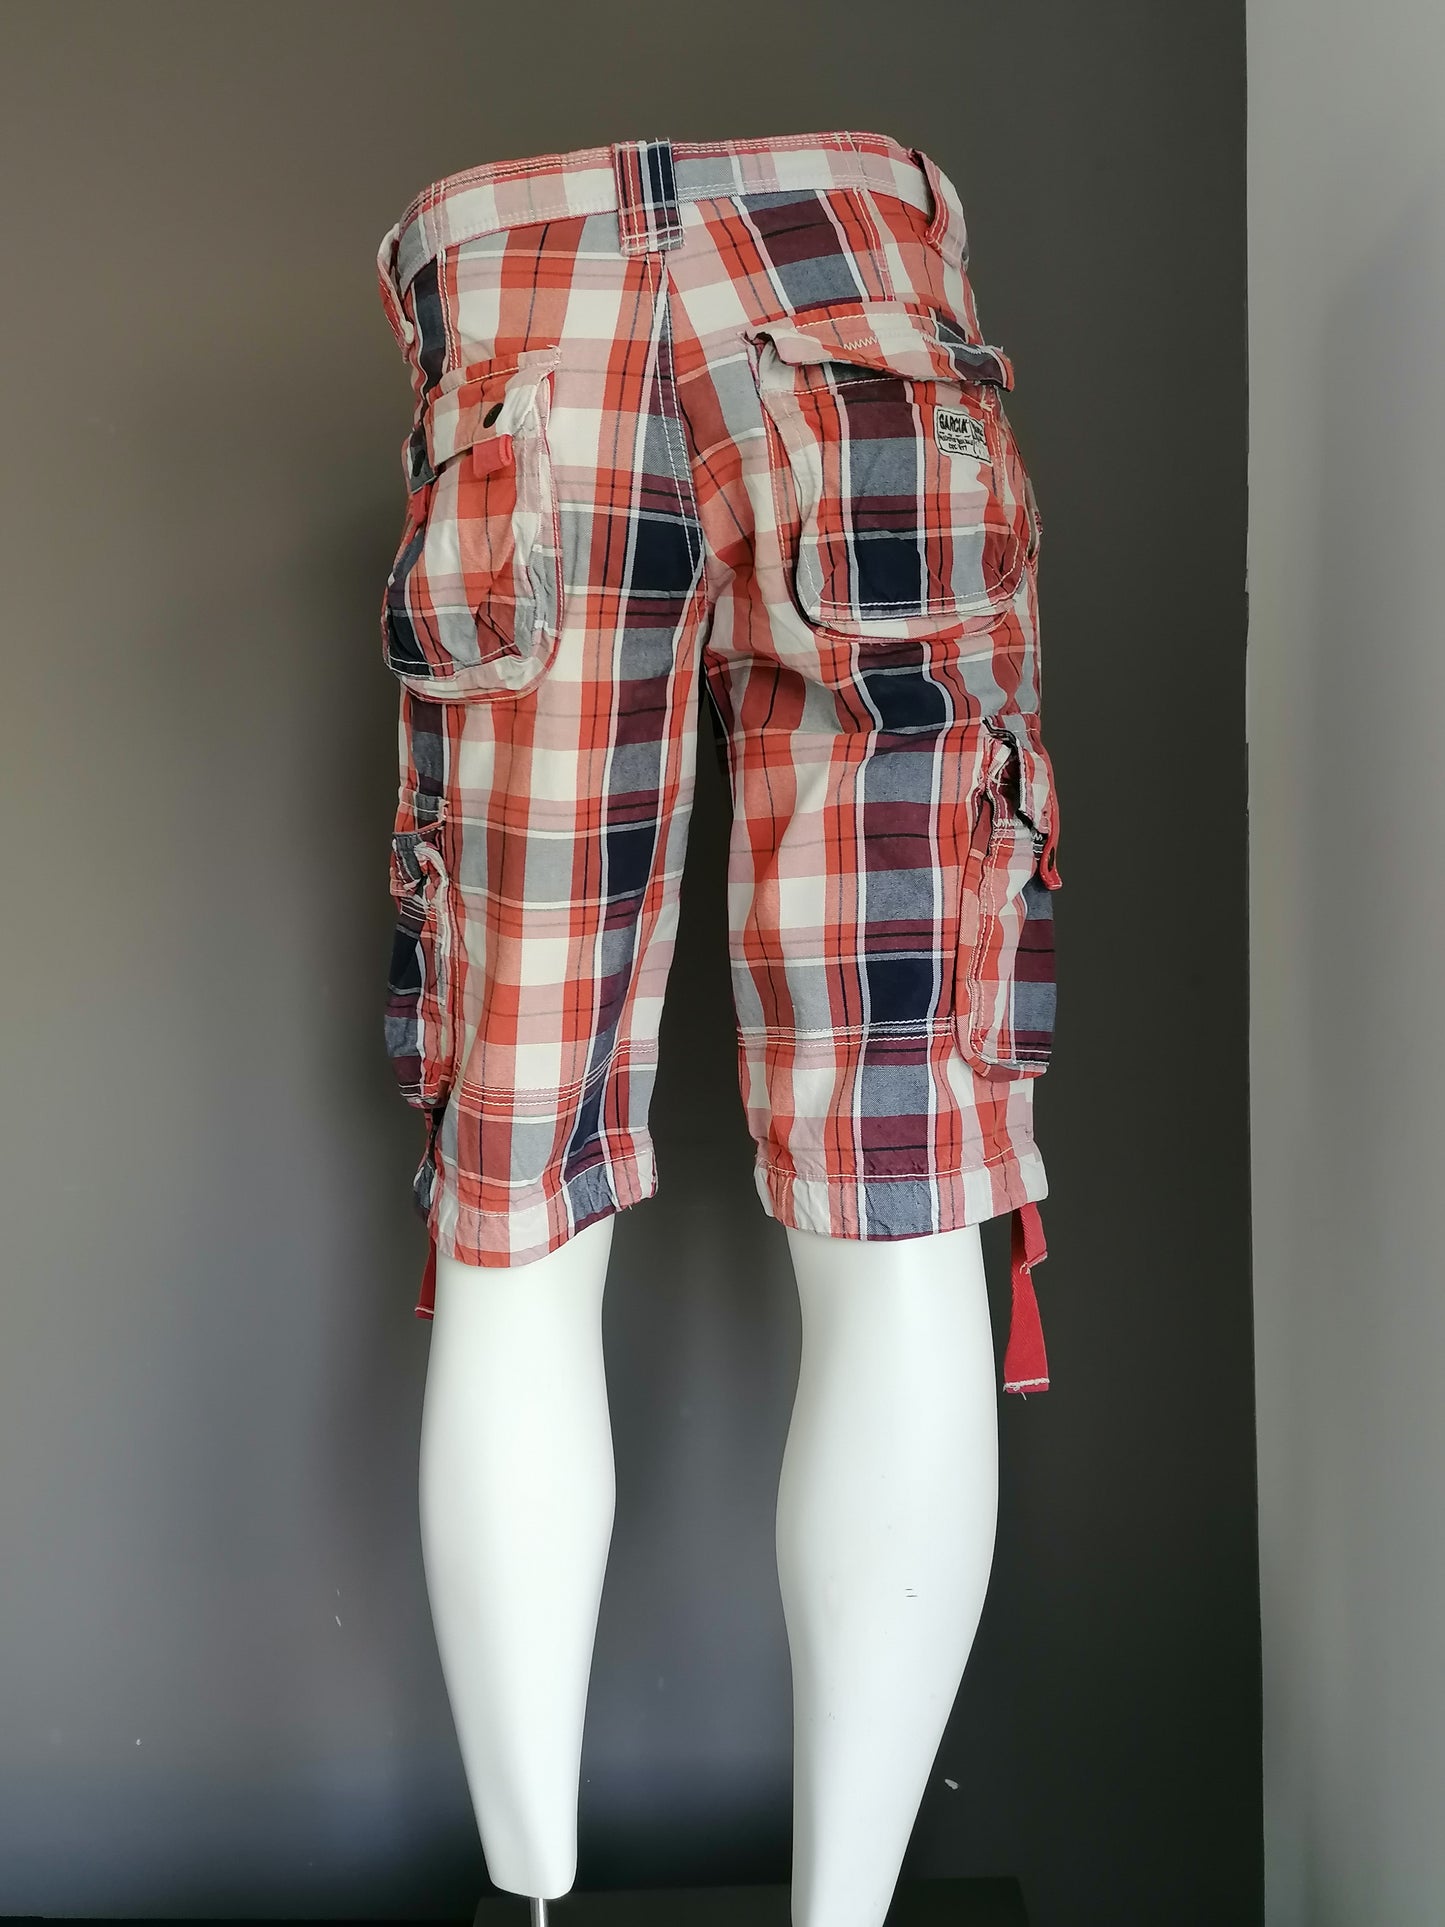 Pantalones cortos de García con bolsas. Red Beige Blue revisado. Tamaño W32.